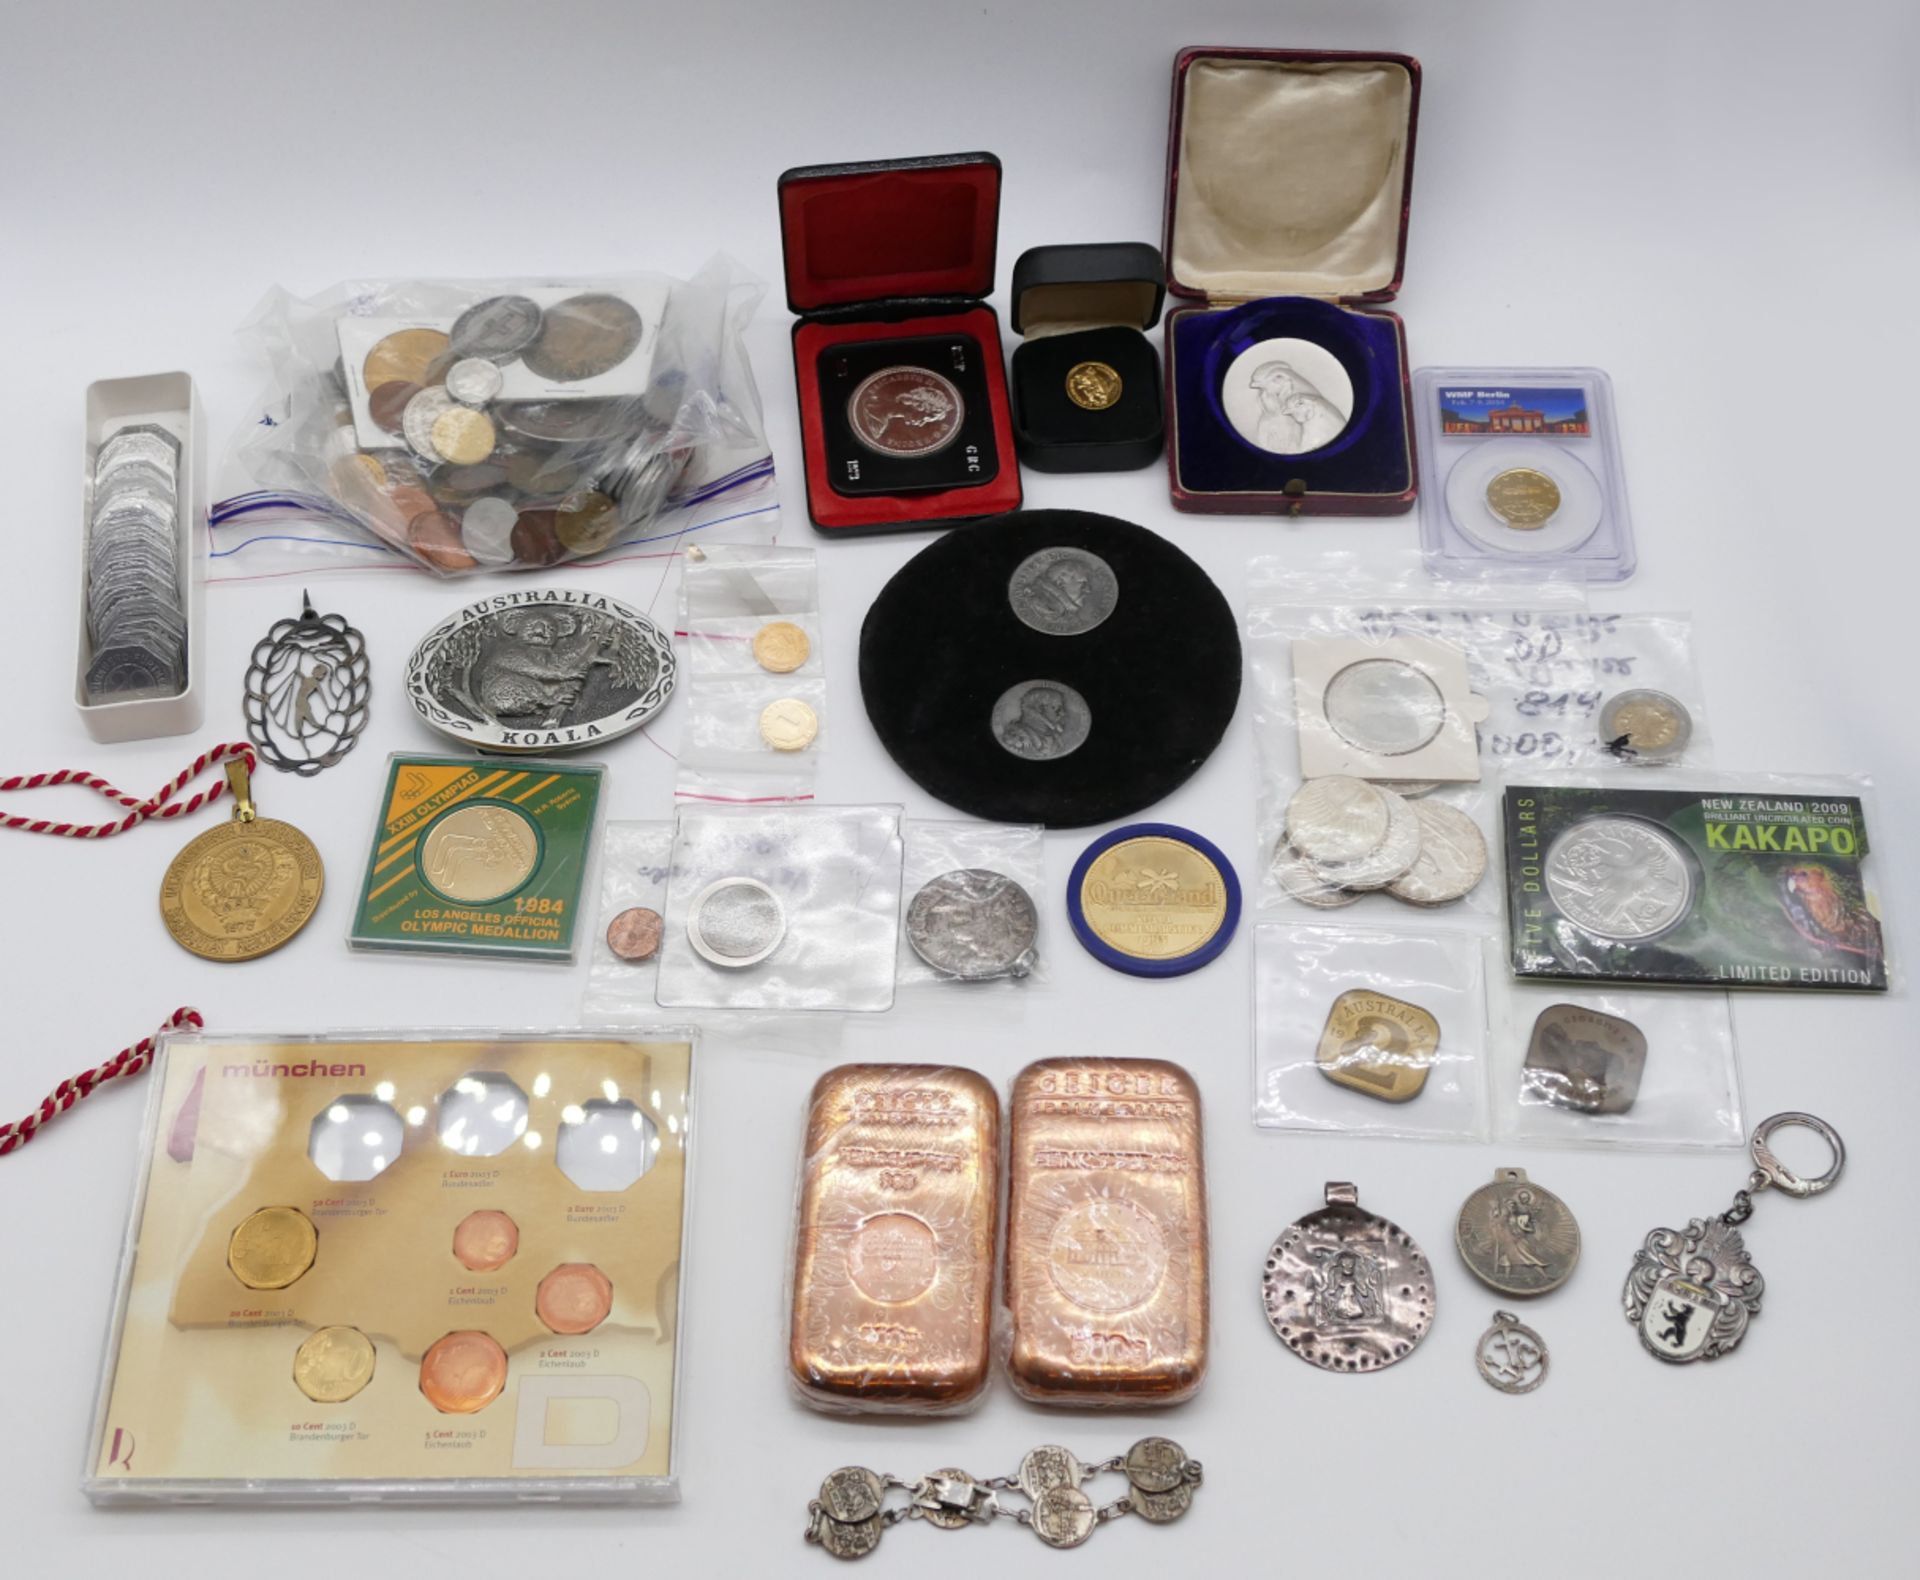 1 Konv. Münzen/Medaillen u.a.: Silber/Metall u.a., BRD 5/10 DM, Kanada, Australien, Euros in Münzen,